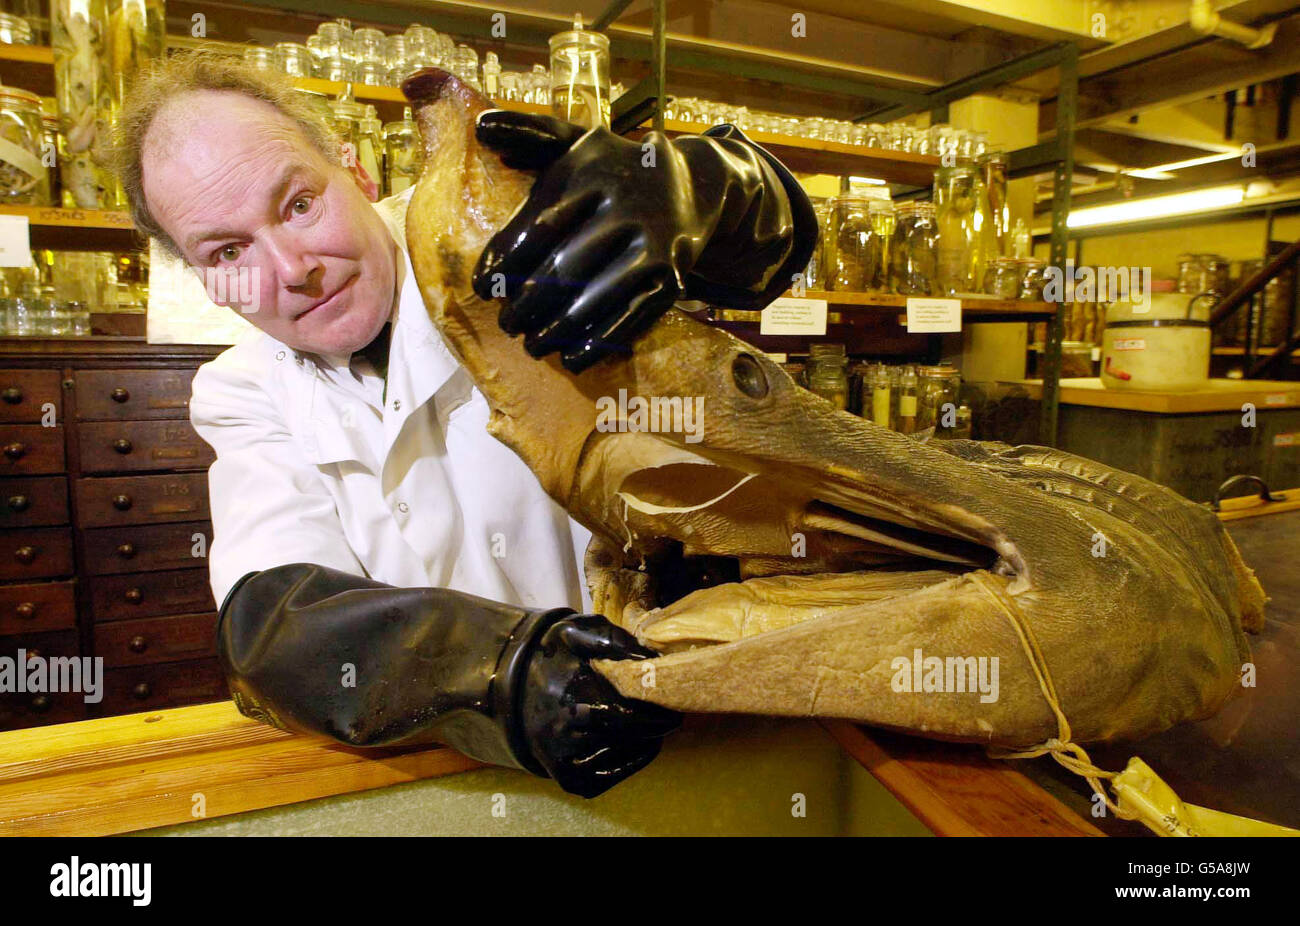 Oliver Crimmen, curador principal de peces, con la cabeza conservada de un tiburón peregrino en el Museo de Historia Natural, uno de los 22 millones de especímenes que actualmente se trasladan al nuevo Centro Darwin del Museo, que estará abierto al público en primavera/verano de 2002. Foto de stock